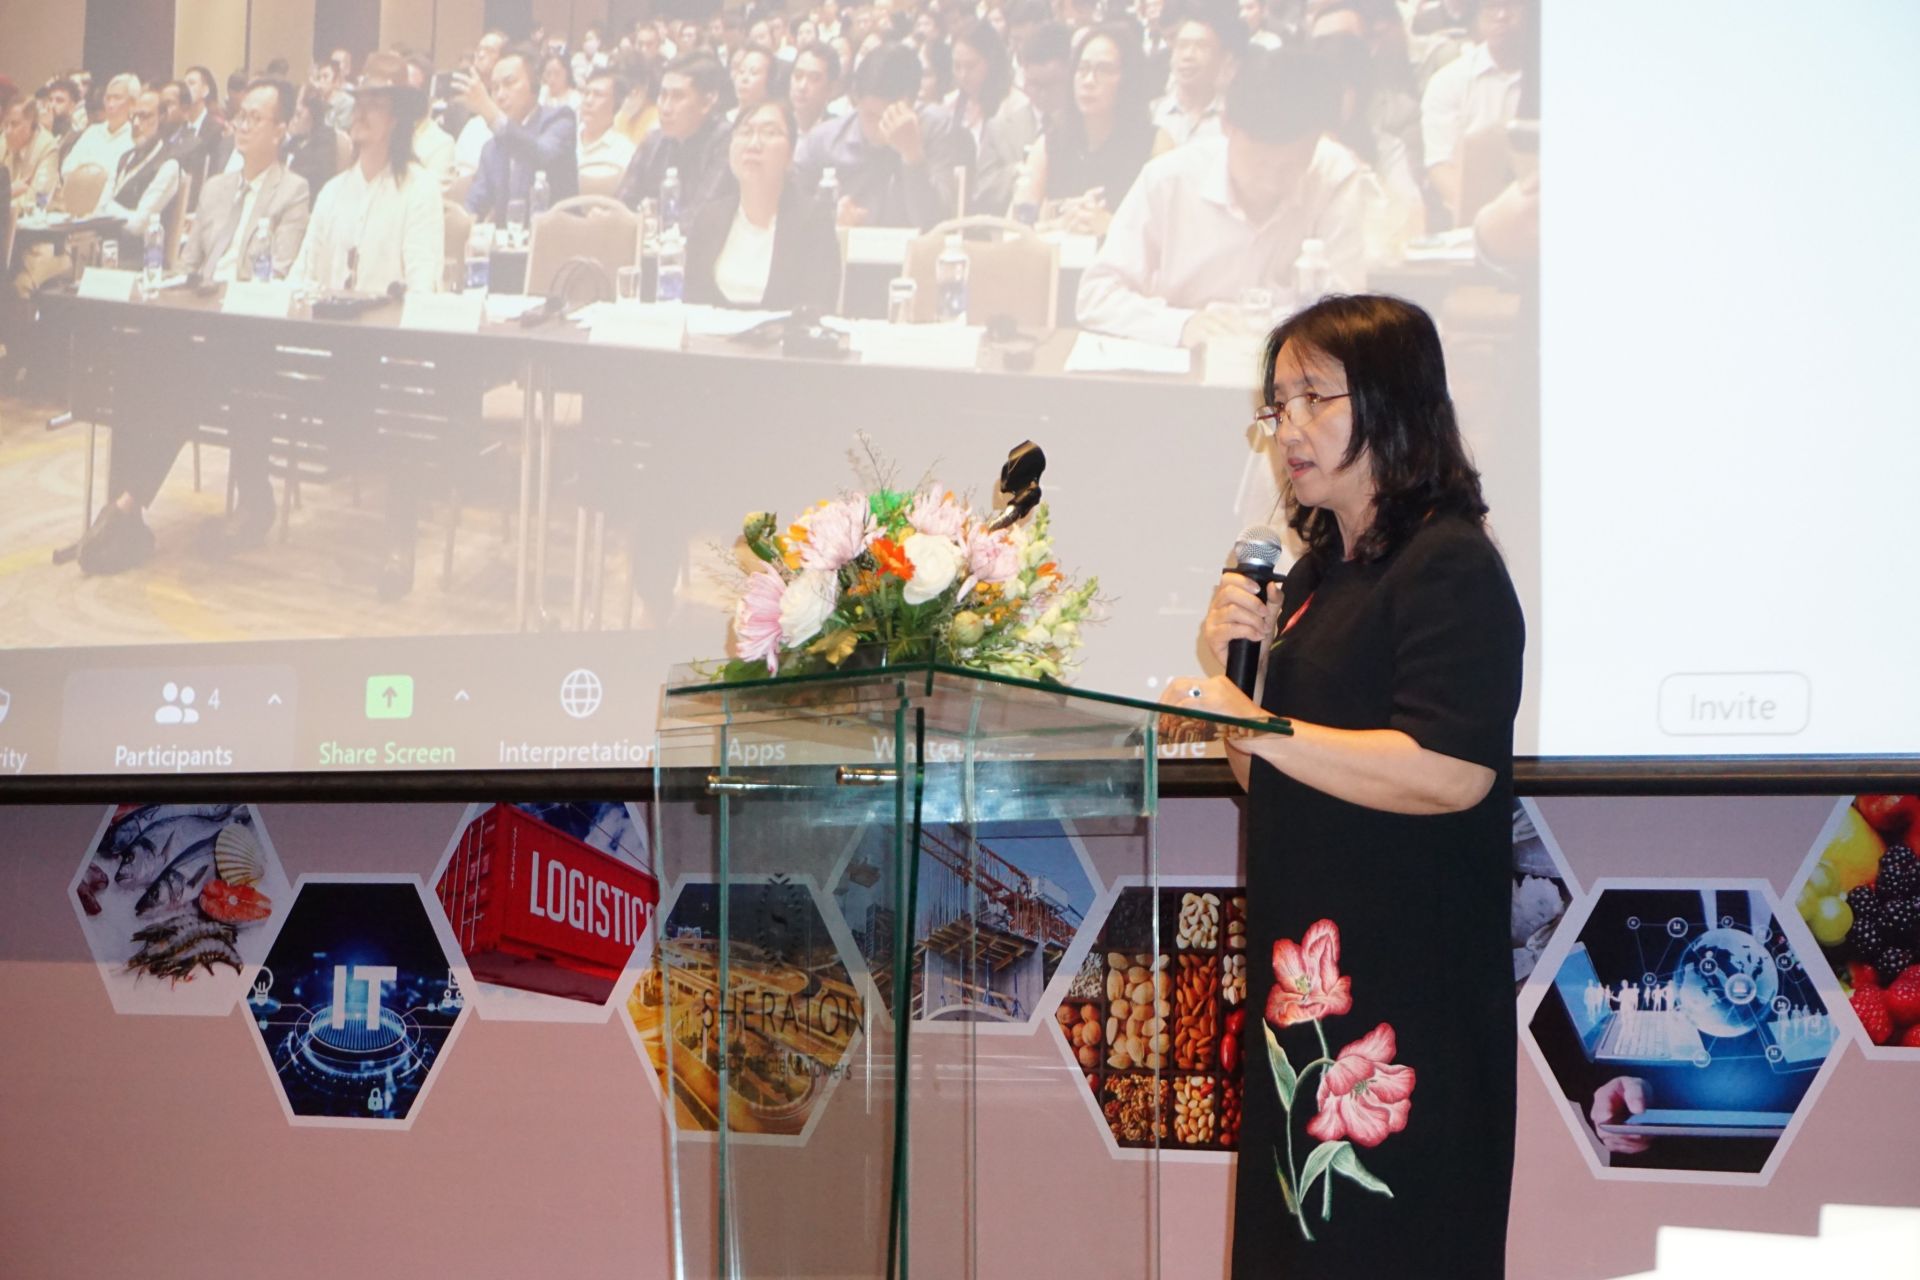 Bà Đoàn Thị Ngọc Vân - Phó Giám đốc Sở Kế hoạch và Đầu tư Đồng Nai đã có phần giới thiệu về những điều kiện thuận lợi đến các doanh nghiệp khi đầu tư tại tỉnh Đồng Nai